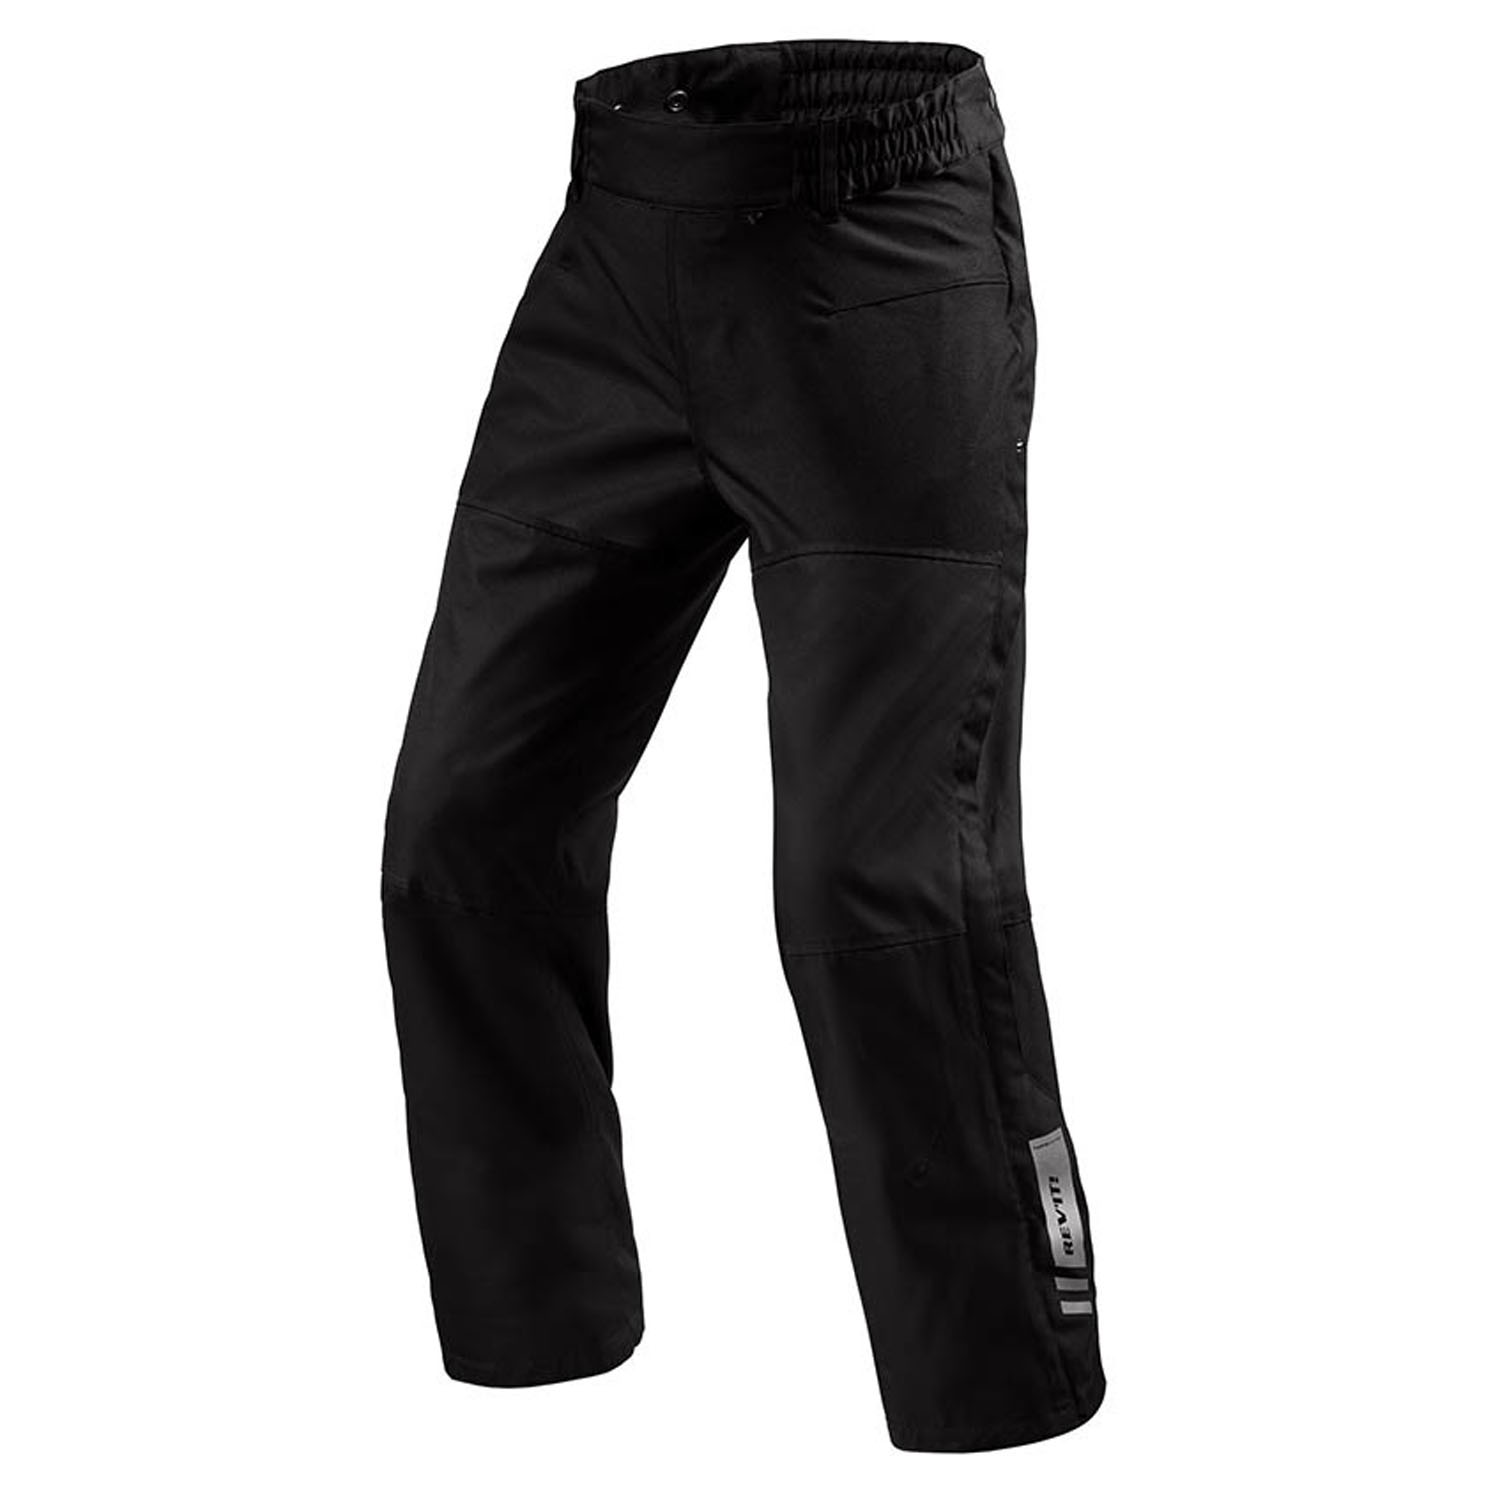 Image of REV'IT! Pants Axis 2 H2O Black Long Motorcycle Pants Größe L